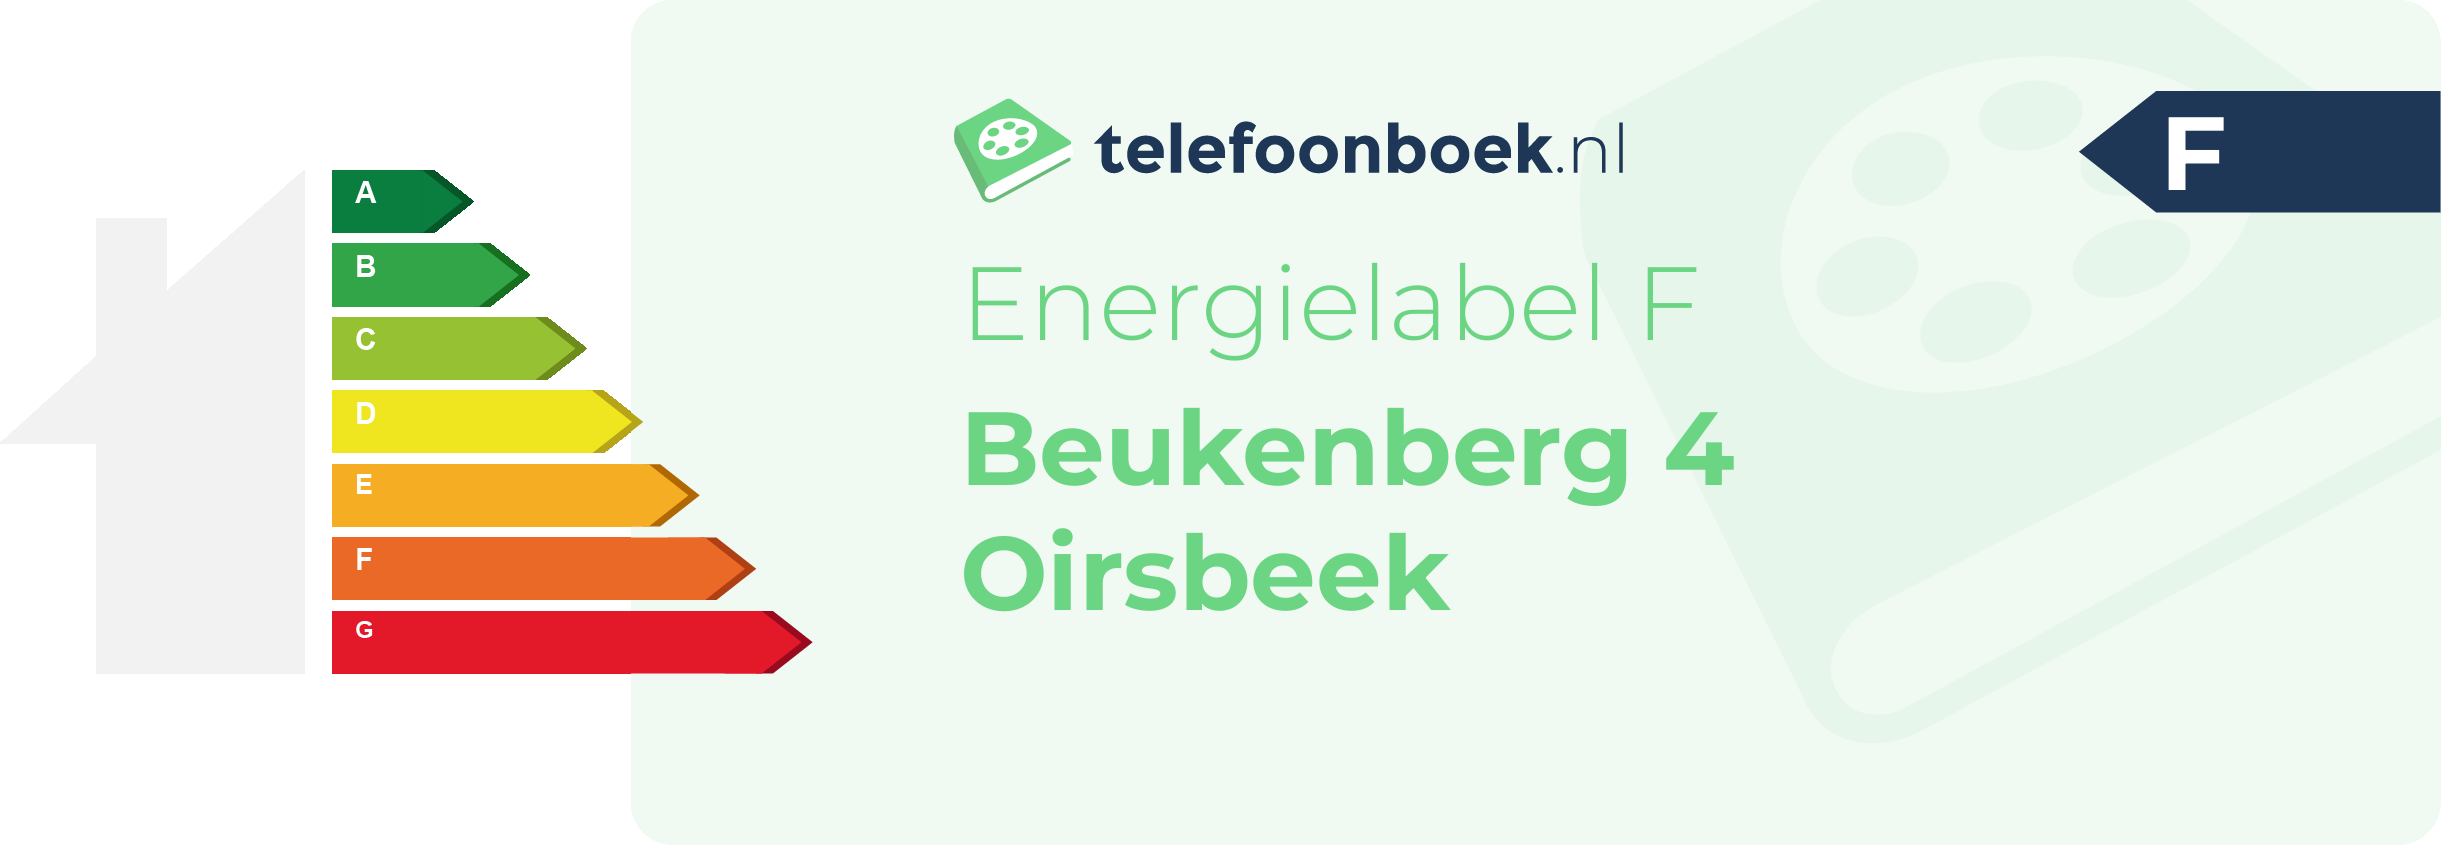 Energielabel Beukenberg 4 Oirsbeek